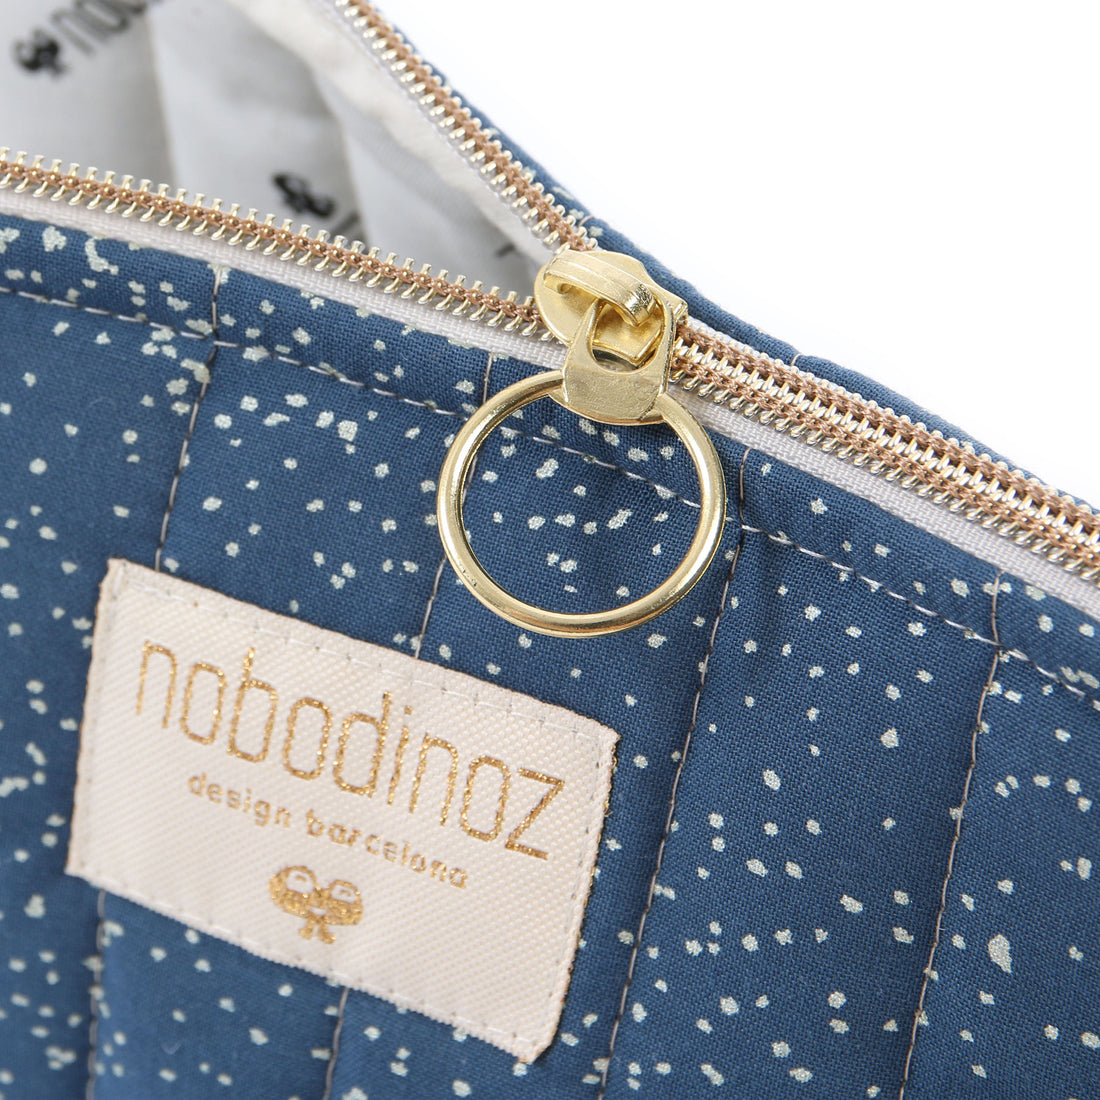 nobodinoz-holiday-vanity-case-gold-bubble-night-blue- (2)